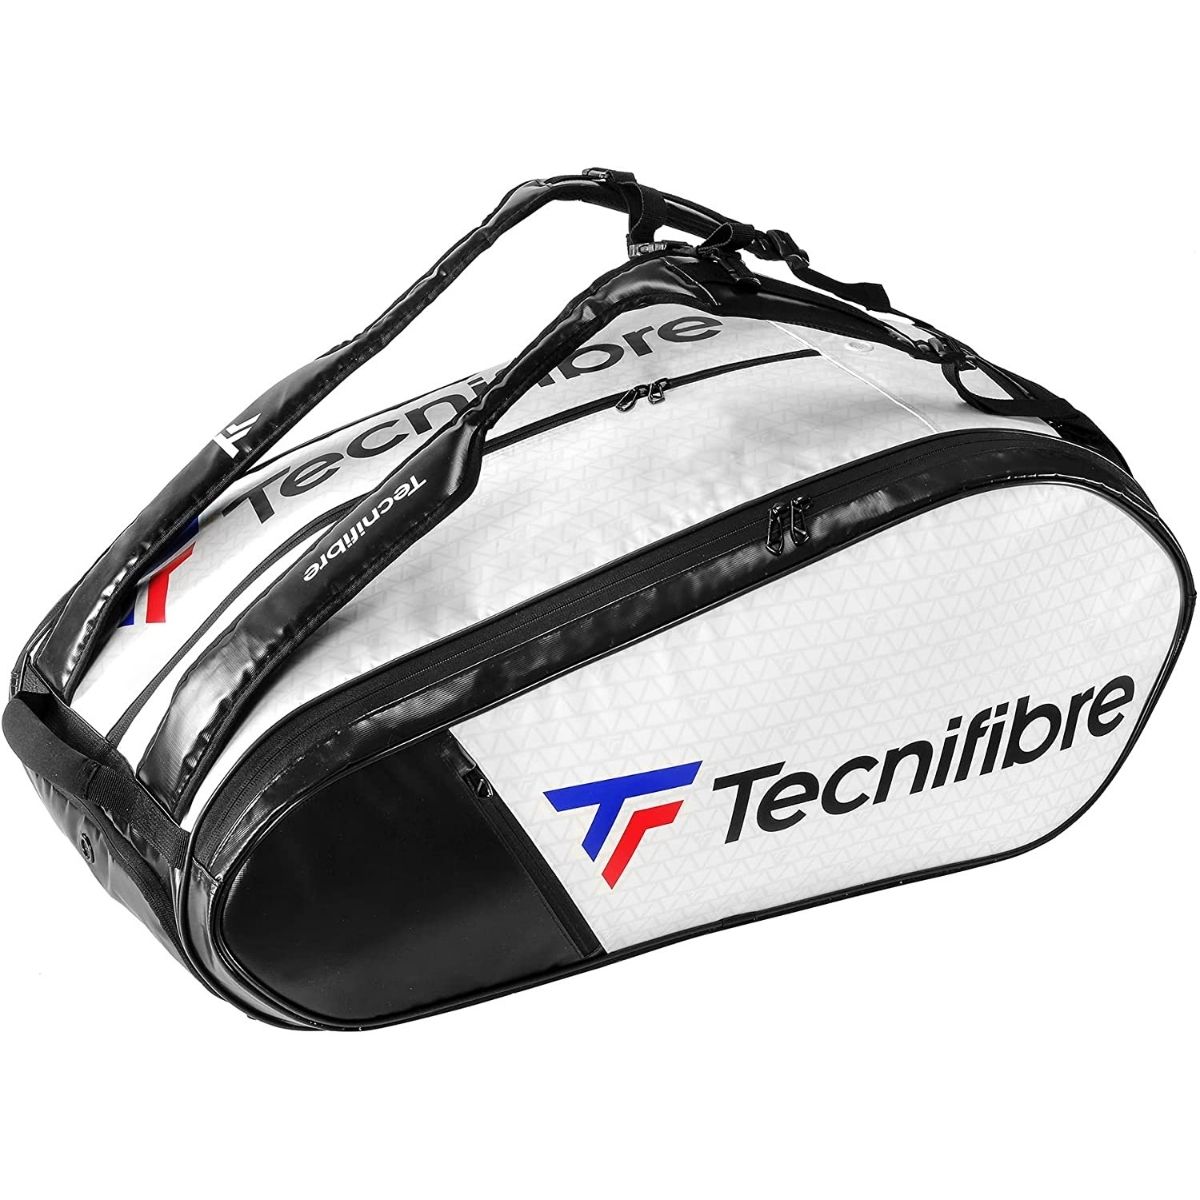 The Best Tennis Bags Options: Tecnifibre Tour Endurance 15 Pack Tennis Bag